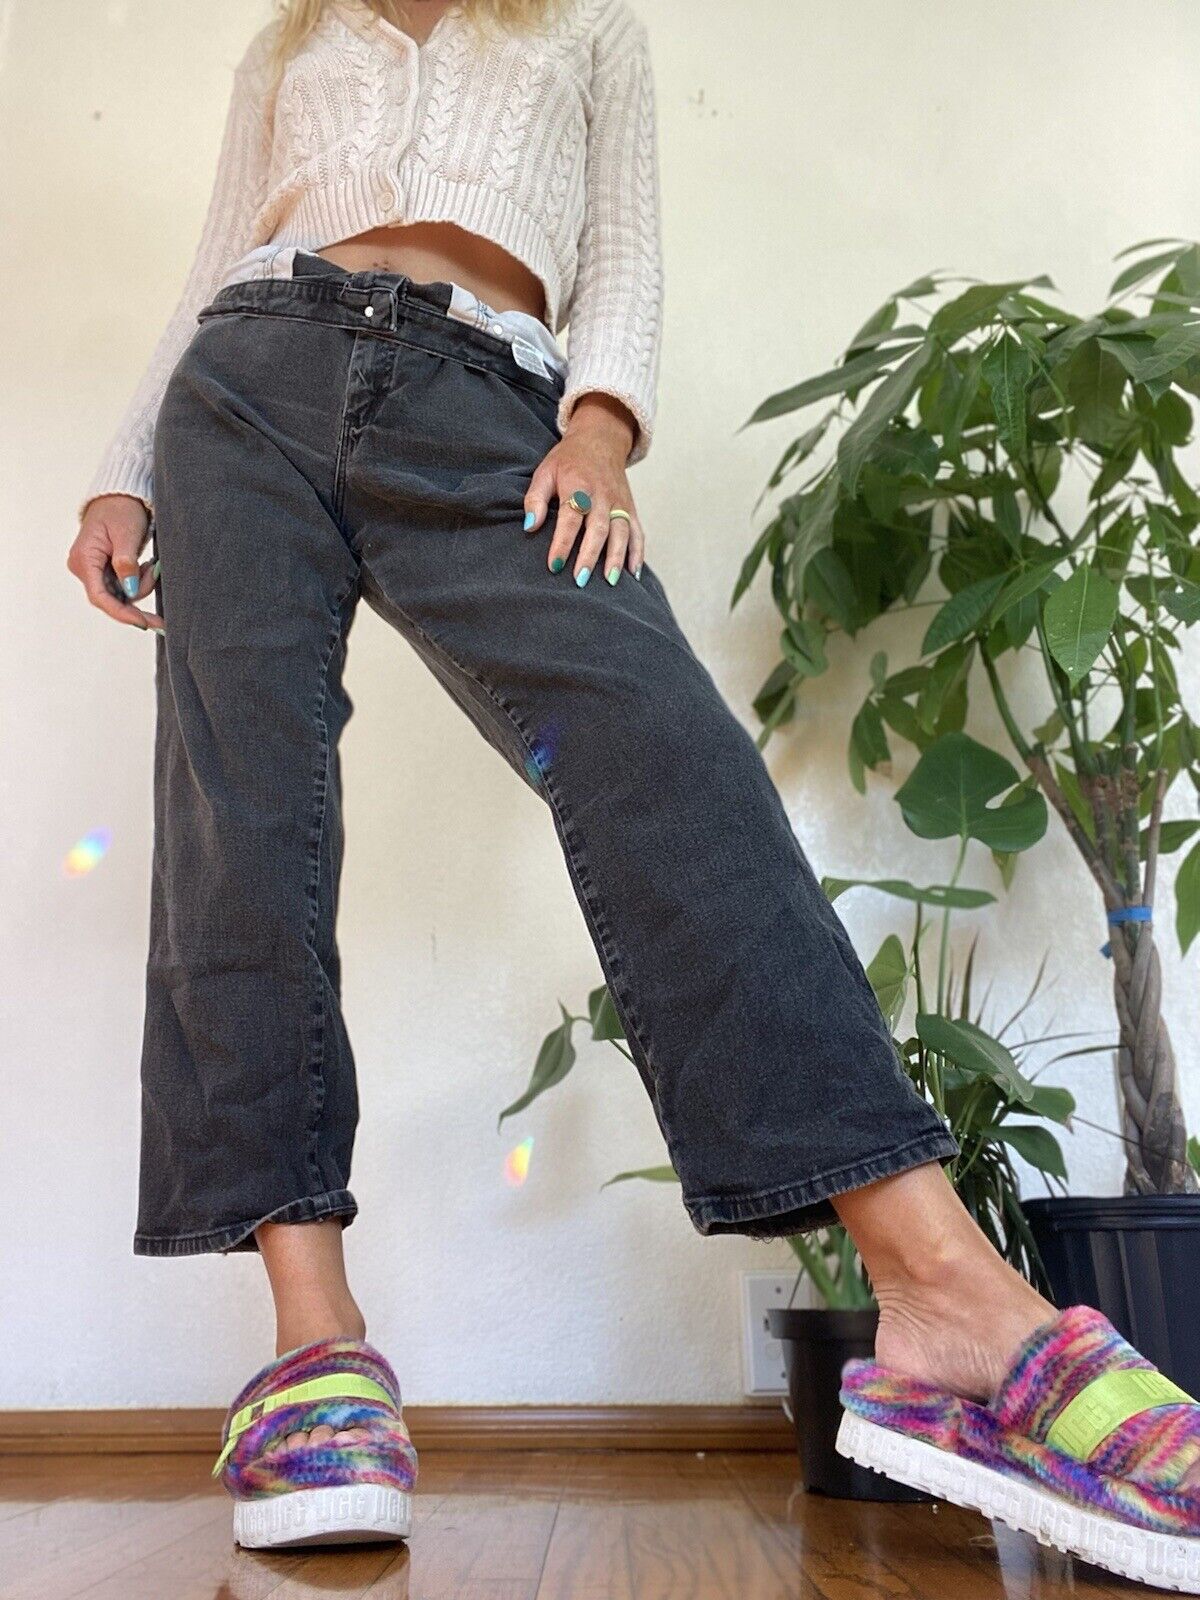 Black Straight Leg Jeans - Lee - 14 Short # 2203